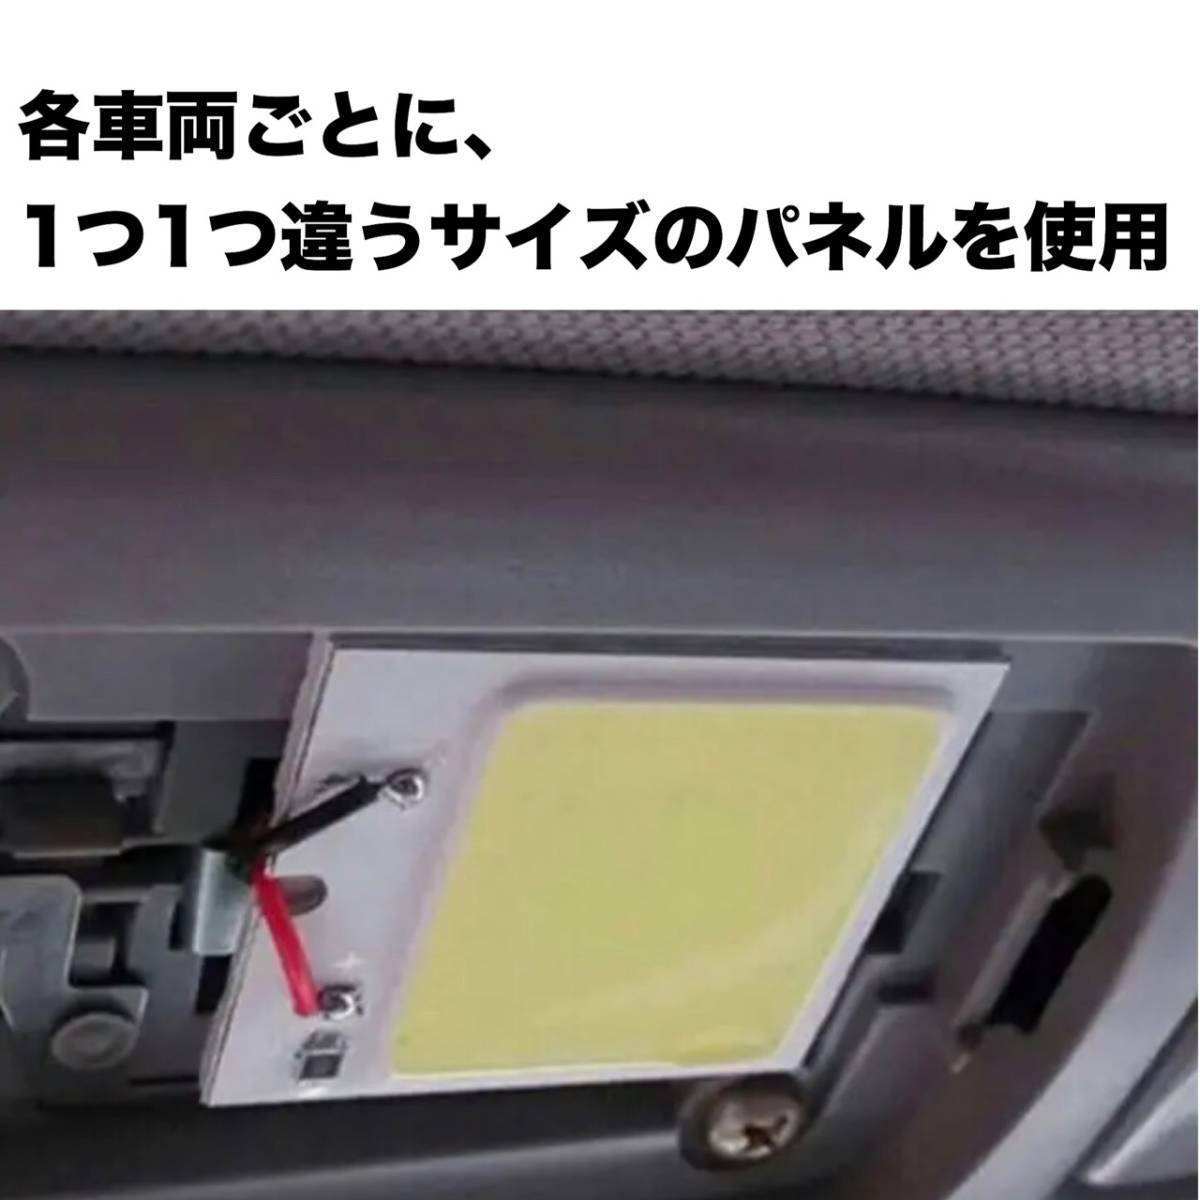 200 series Hiace DX spoiler ngLED room lamp COB interior light in car light reading light Wedge lamp white Toyota 